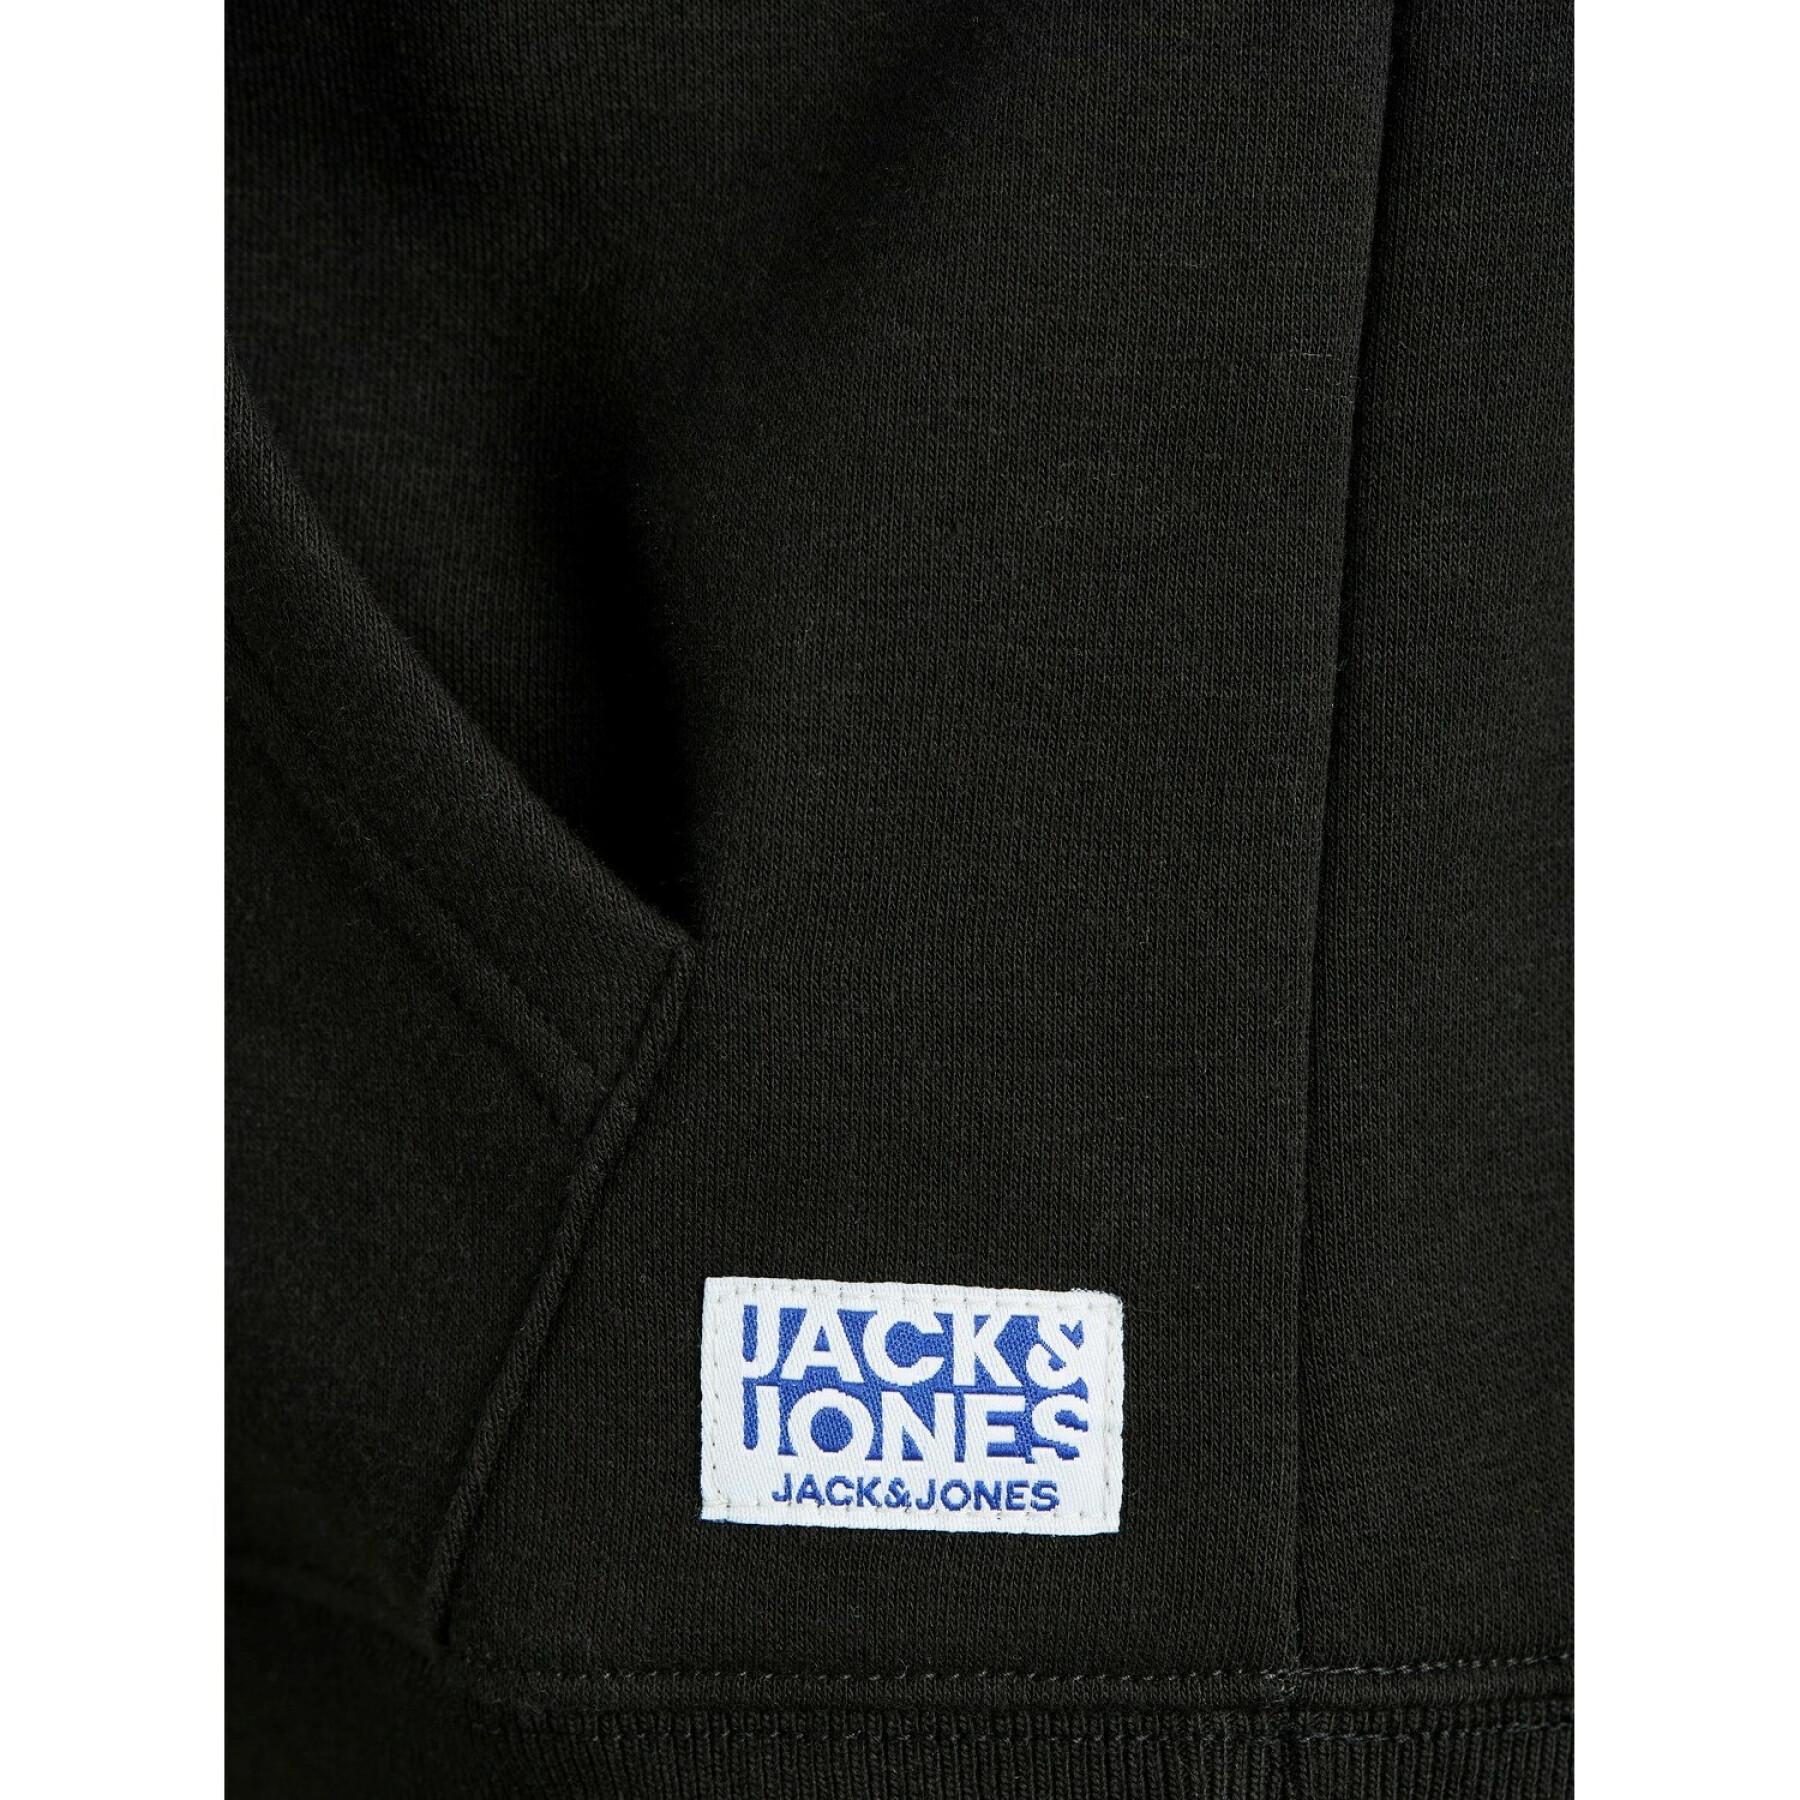 Sudadera con capucha para niños Jack & Jones Soft